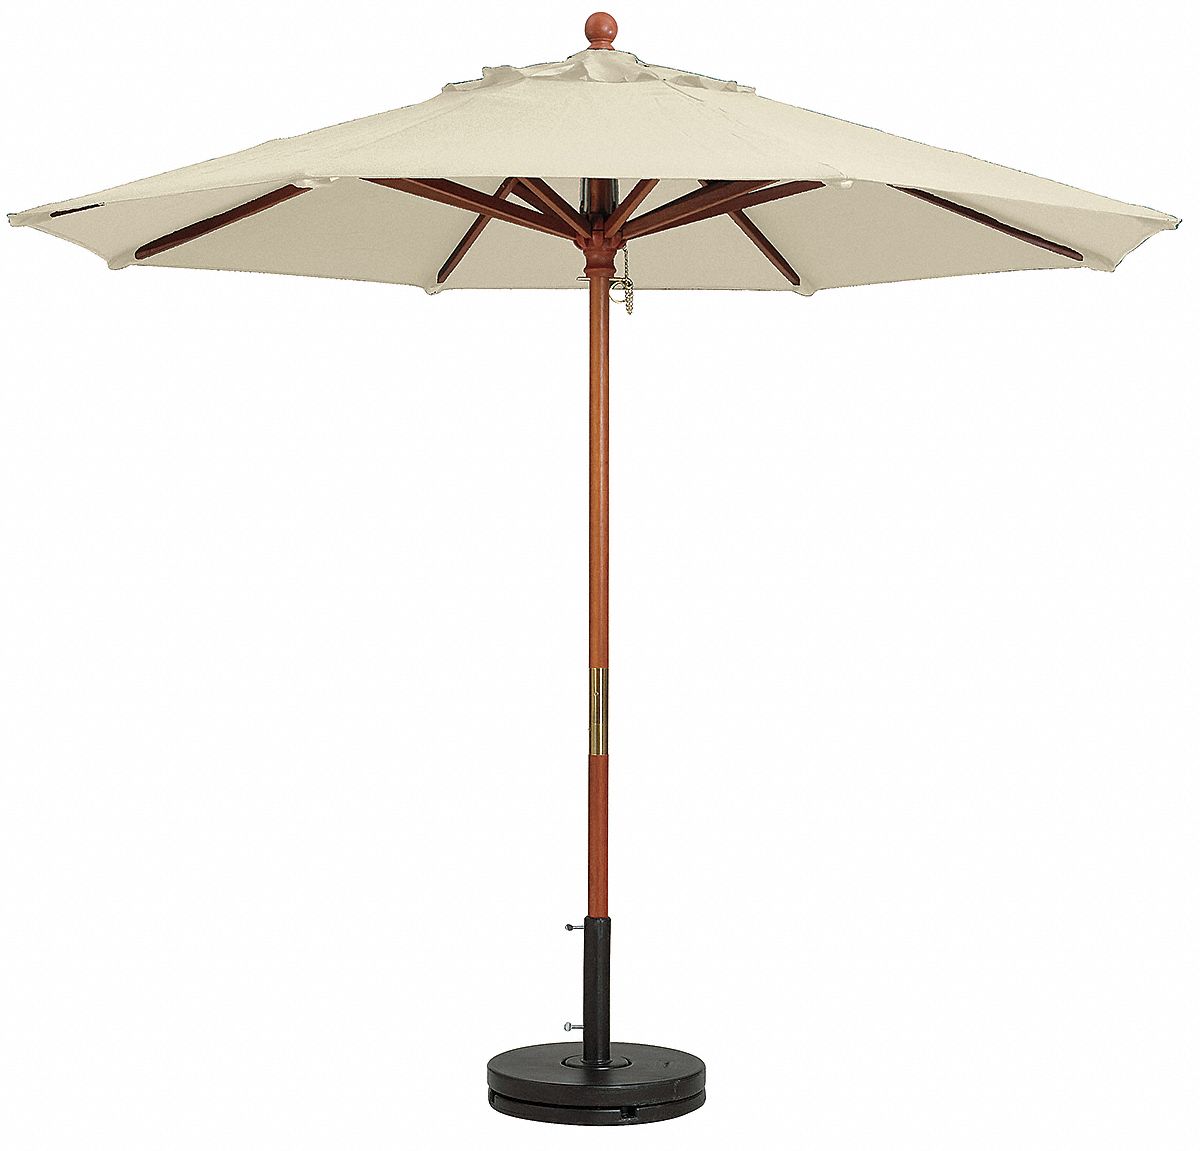 Grosfillex 7ft Wooden Market Umbrella, Wooden Market Umbrella